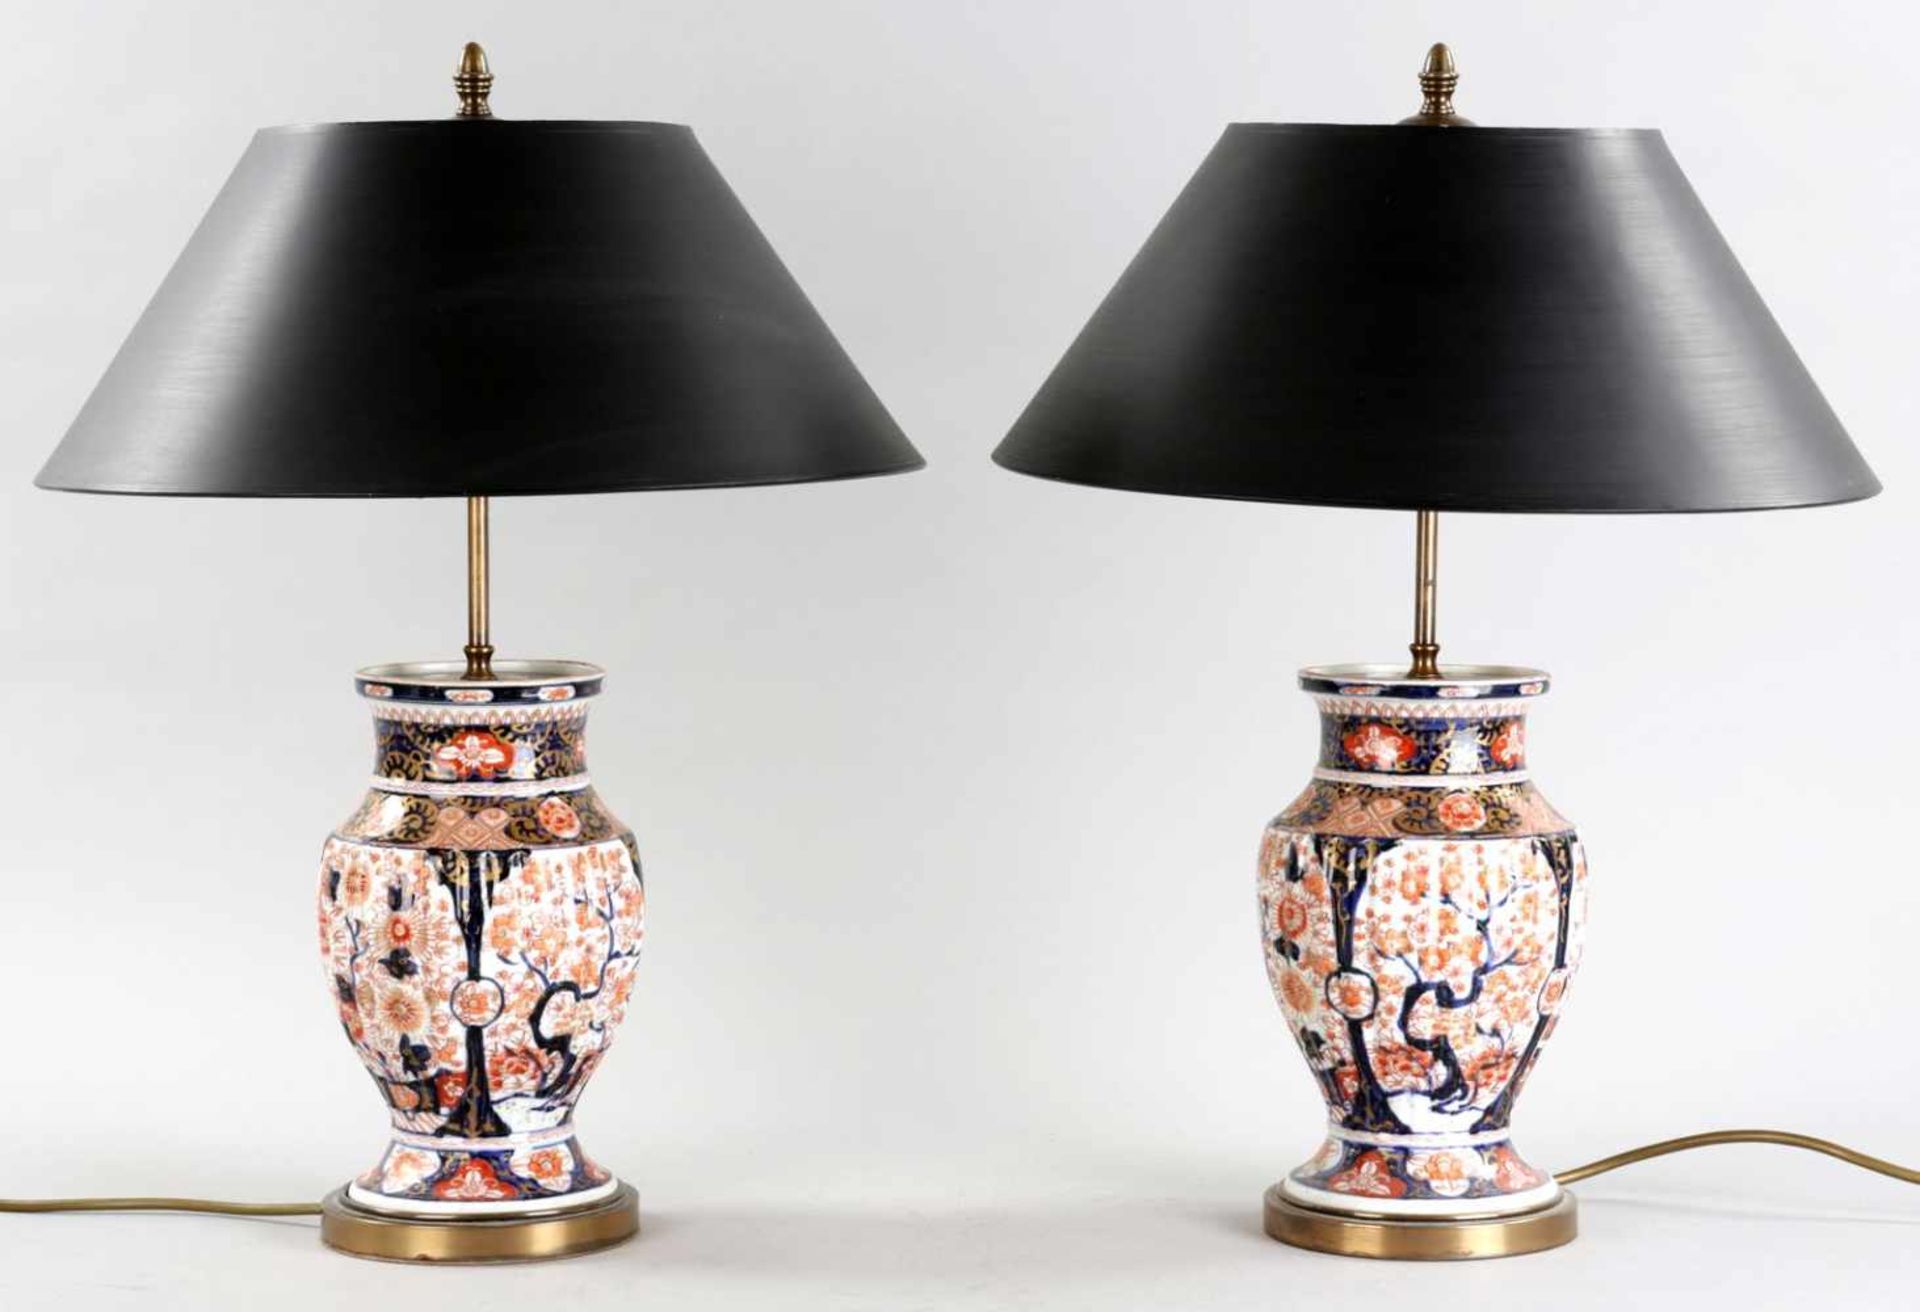 Paar TischlampenPorzellan/Messing, China u.a., um 1900/20.Jh. Gebauchte Vasen m. gerippter Wandung